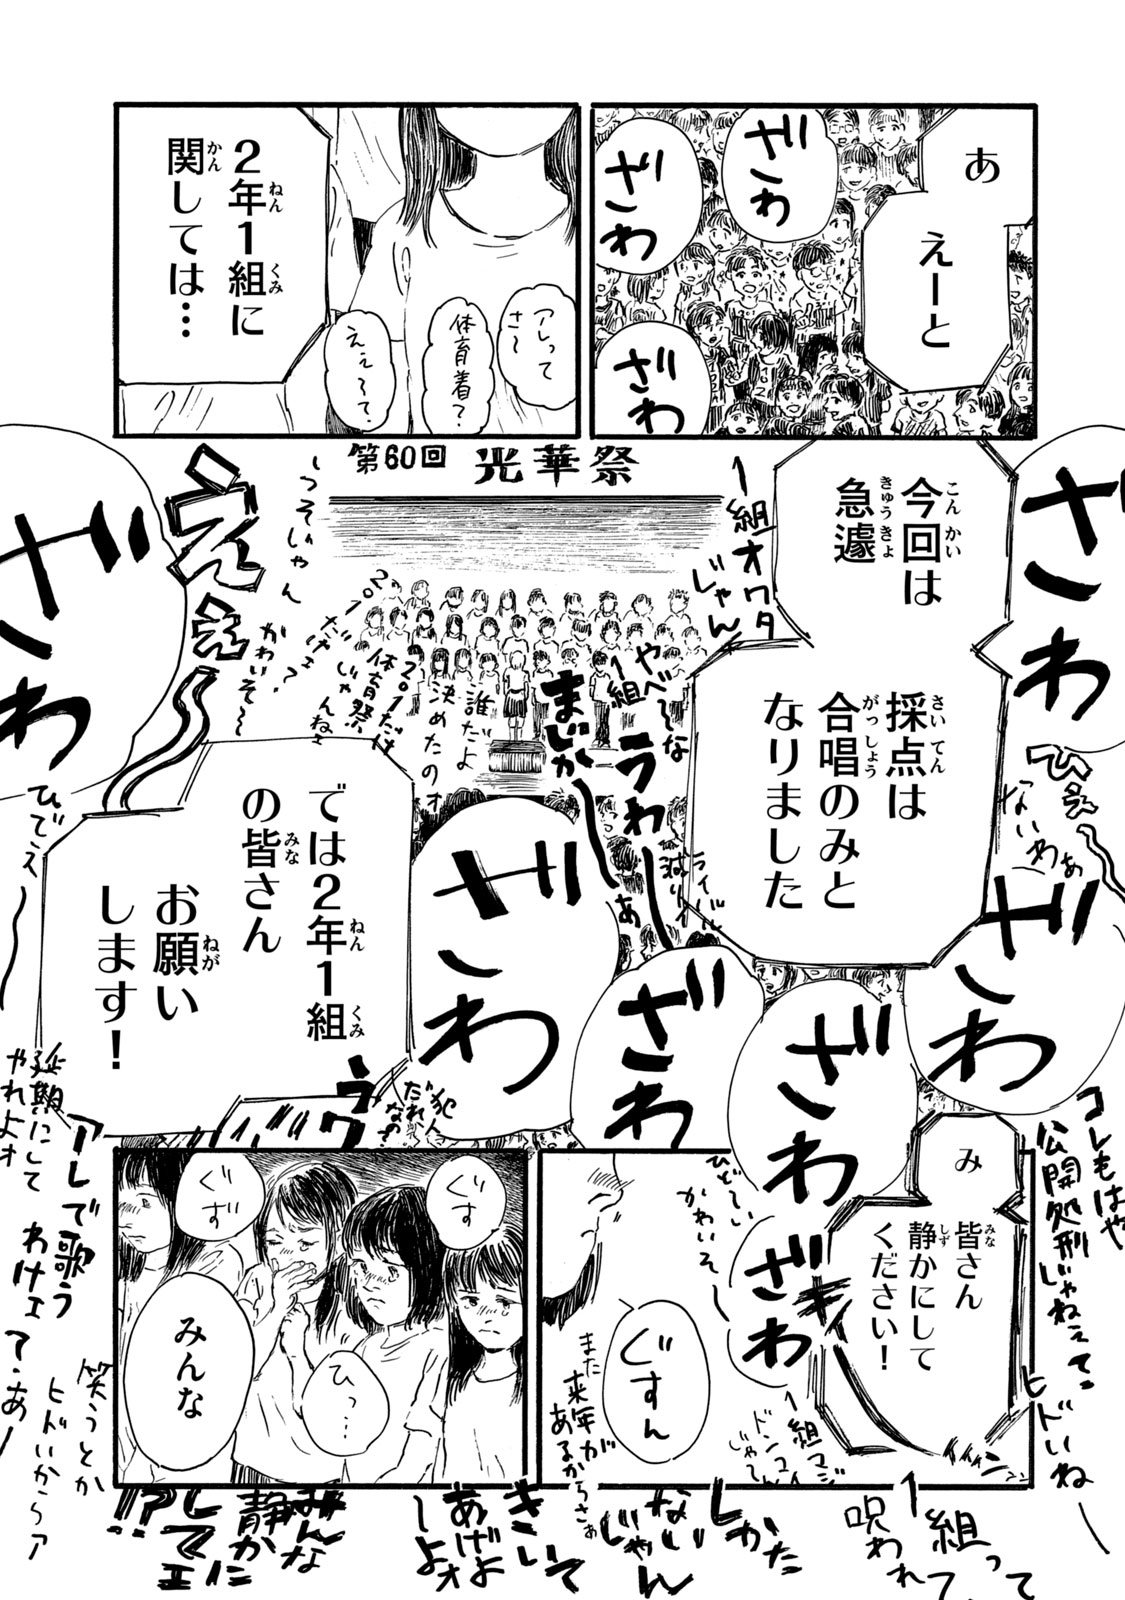 Watashi no Hara no Naka no Bakemono - Chapter 9 - Page 17